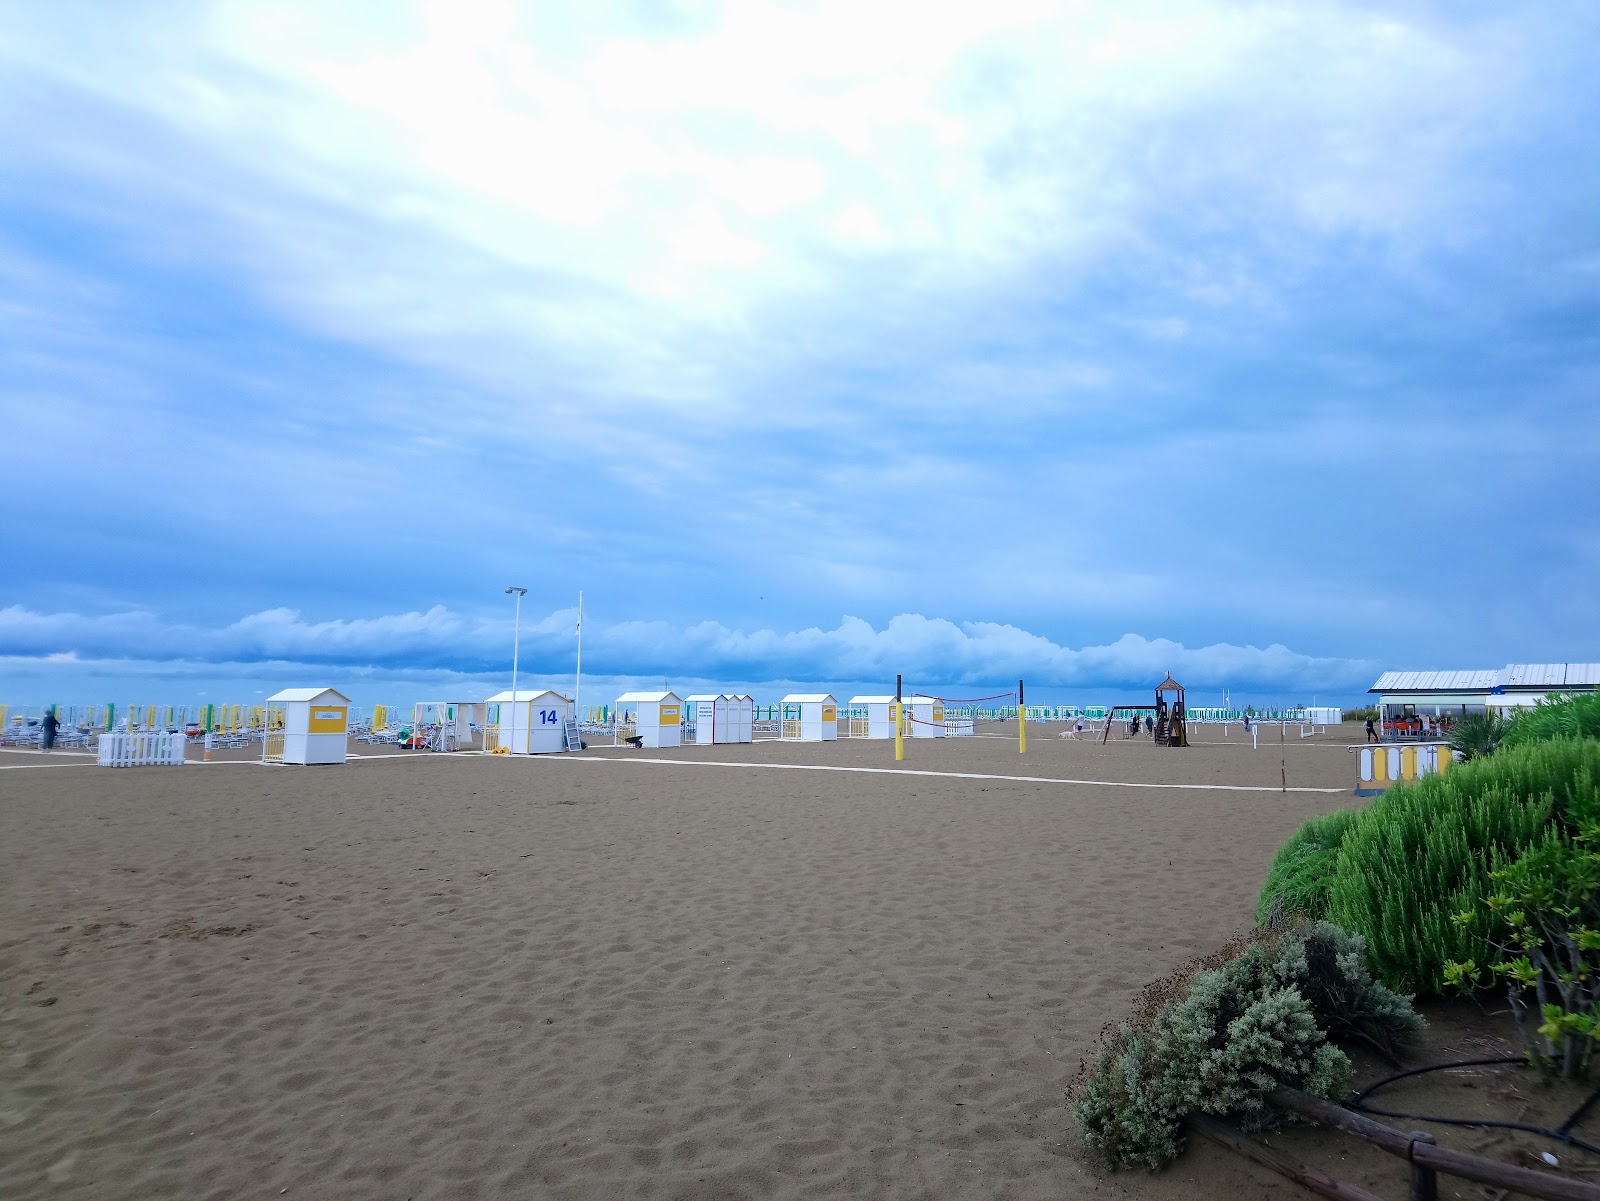 Foto de Spiaggia di Caorle com areia brilhante superfície